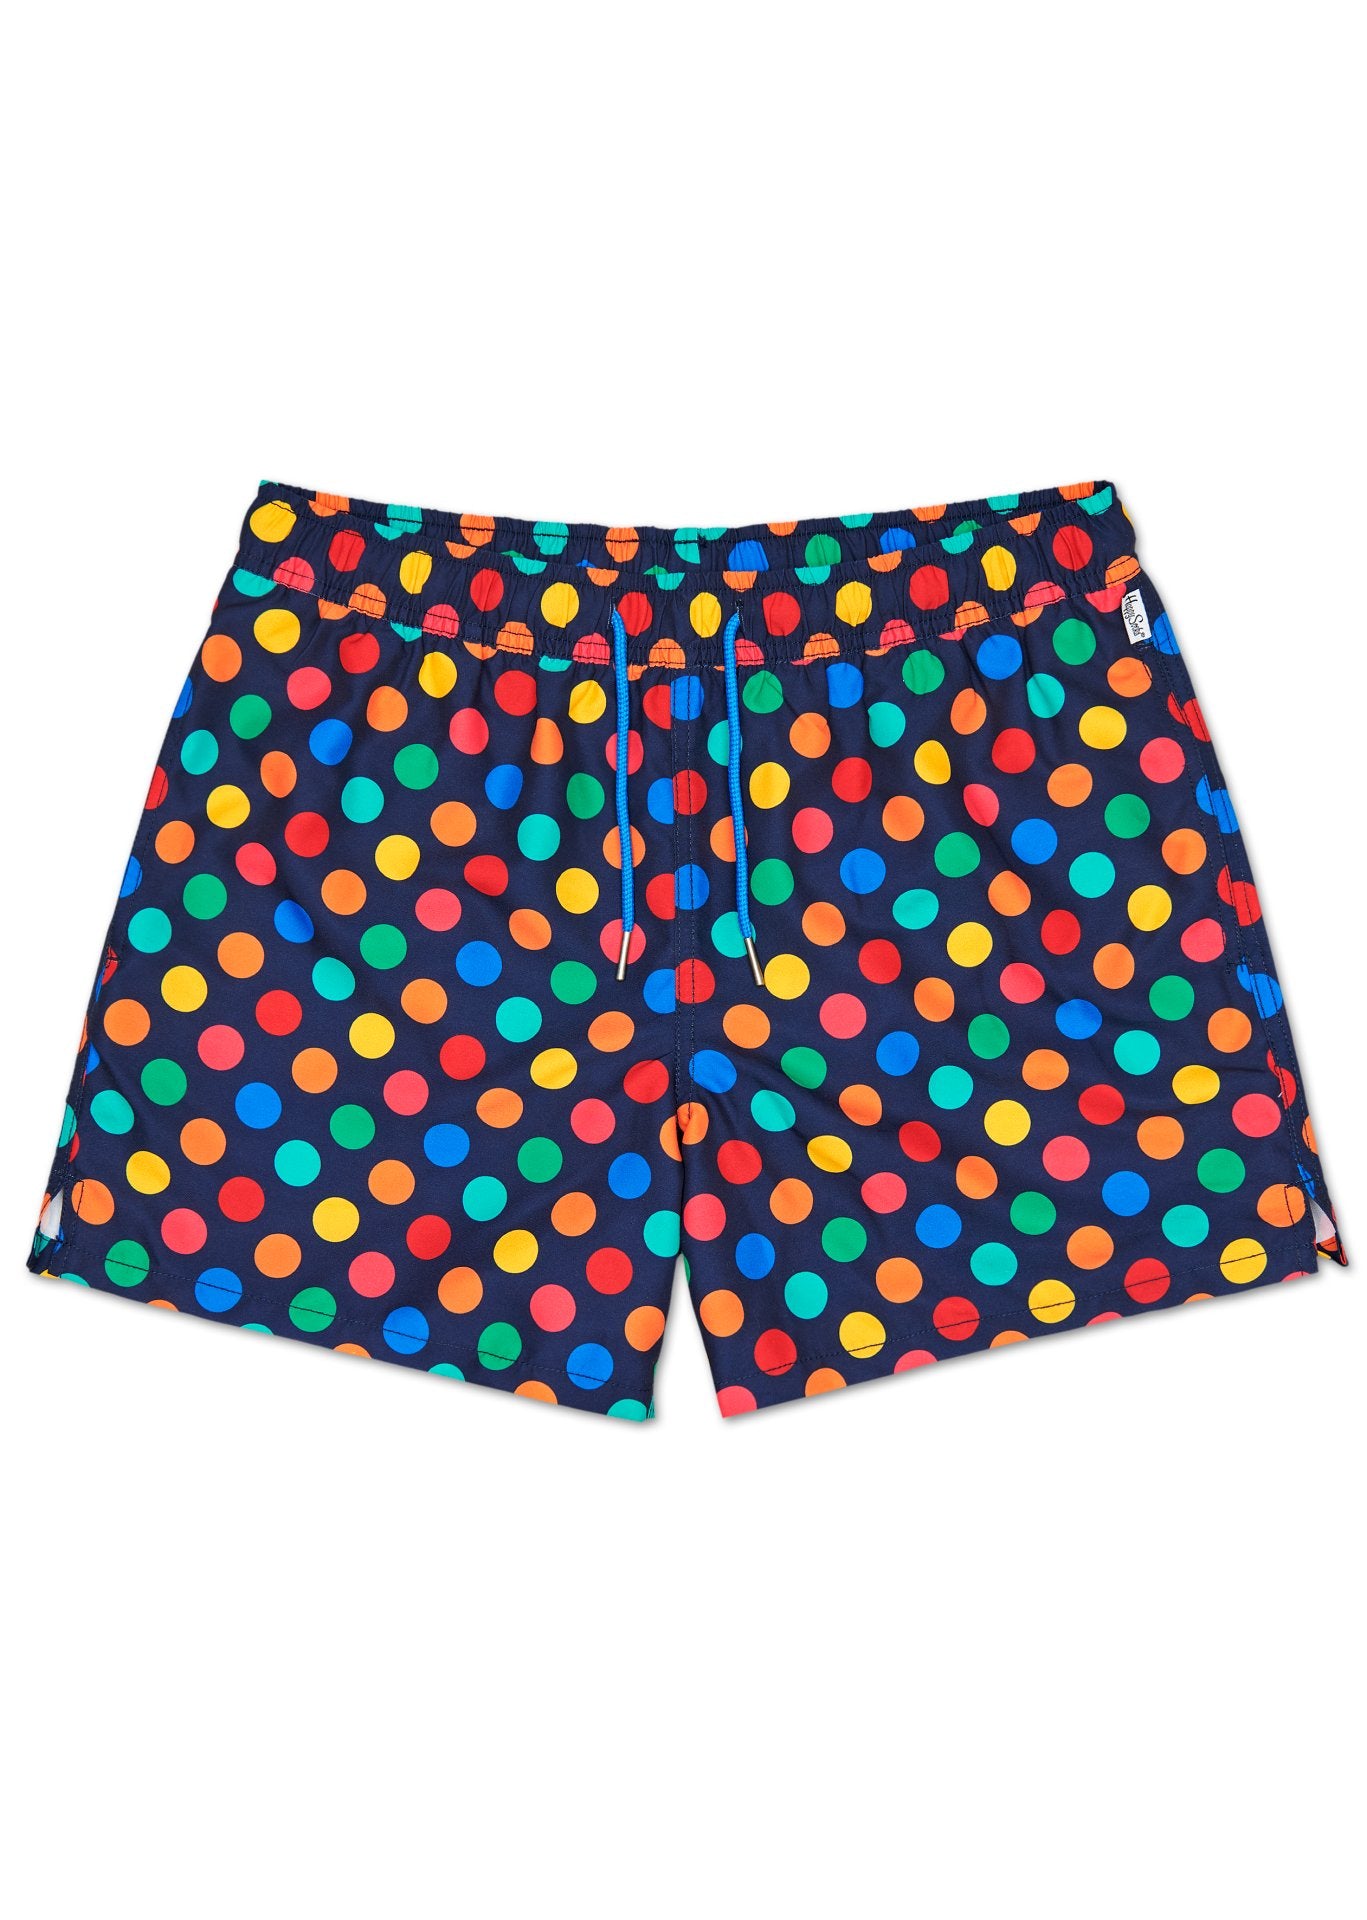 Farebné pánske plavky Happy Socks s bodkami, vzor Big Dot